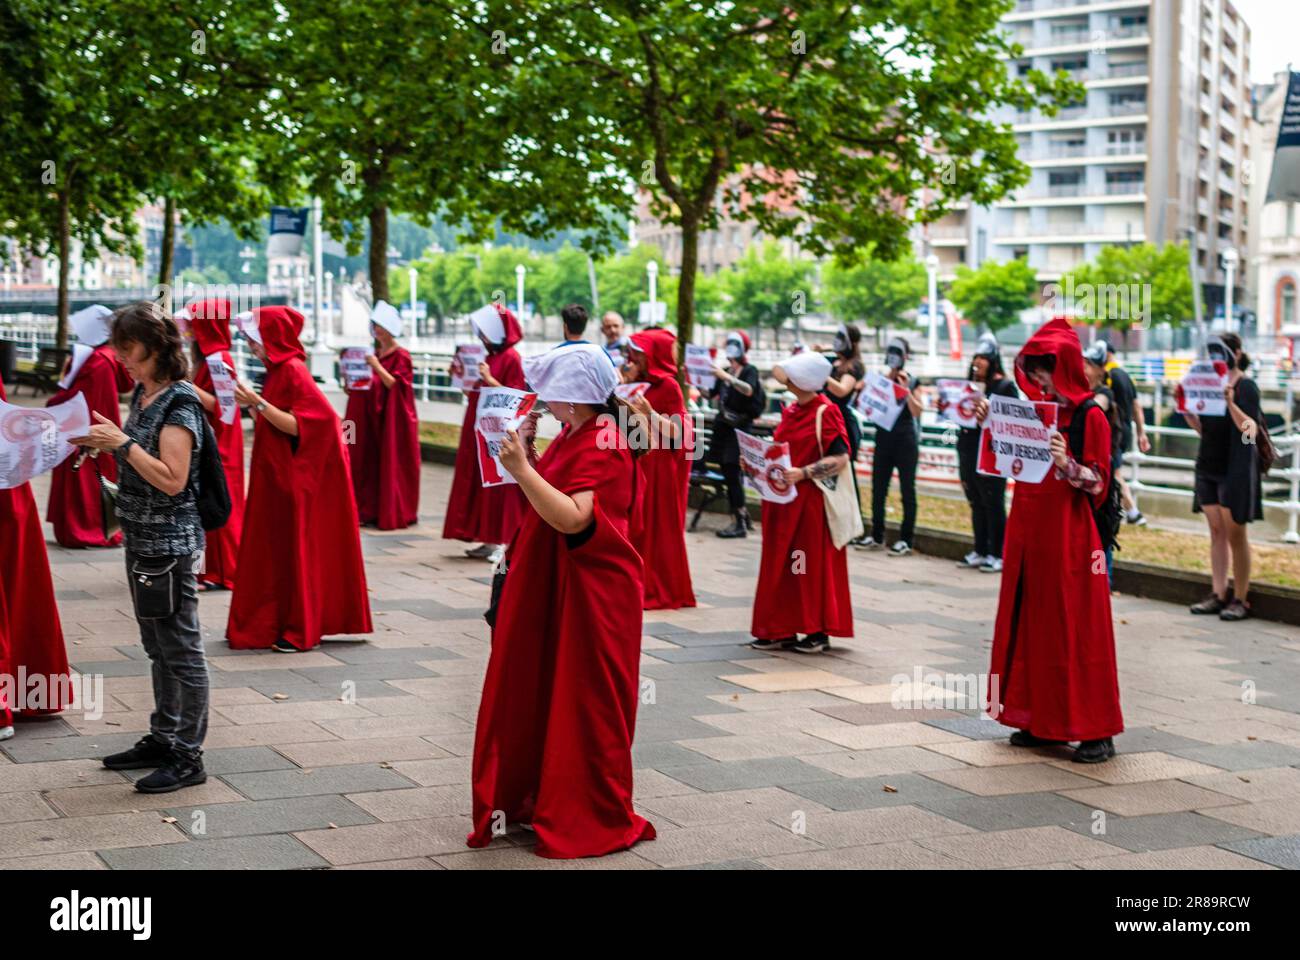 Radikale feministische Aktivisten, die in einem Kostüm aus der Serie „das Magazin“ gekleidet sind, nehmen an einer Demonstration gegen Leihmutterschaft Teil. Stockfoto